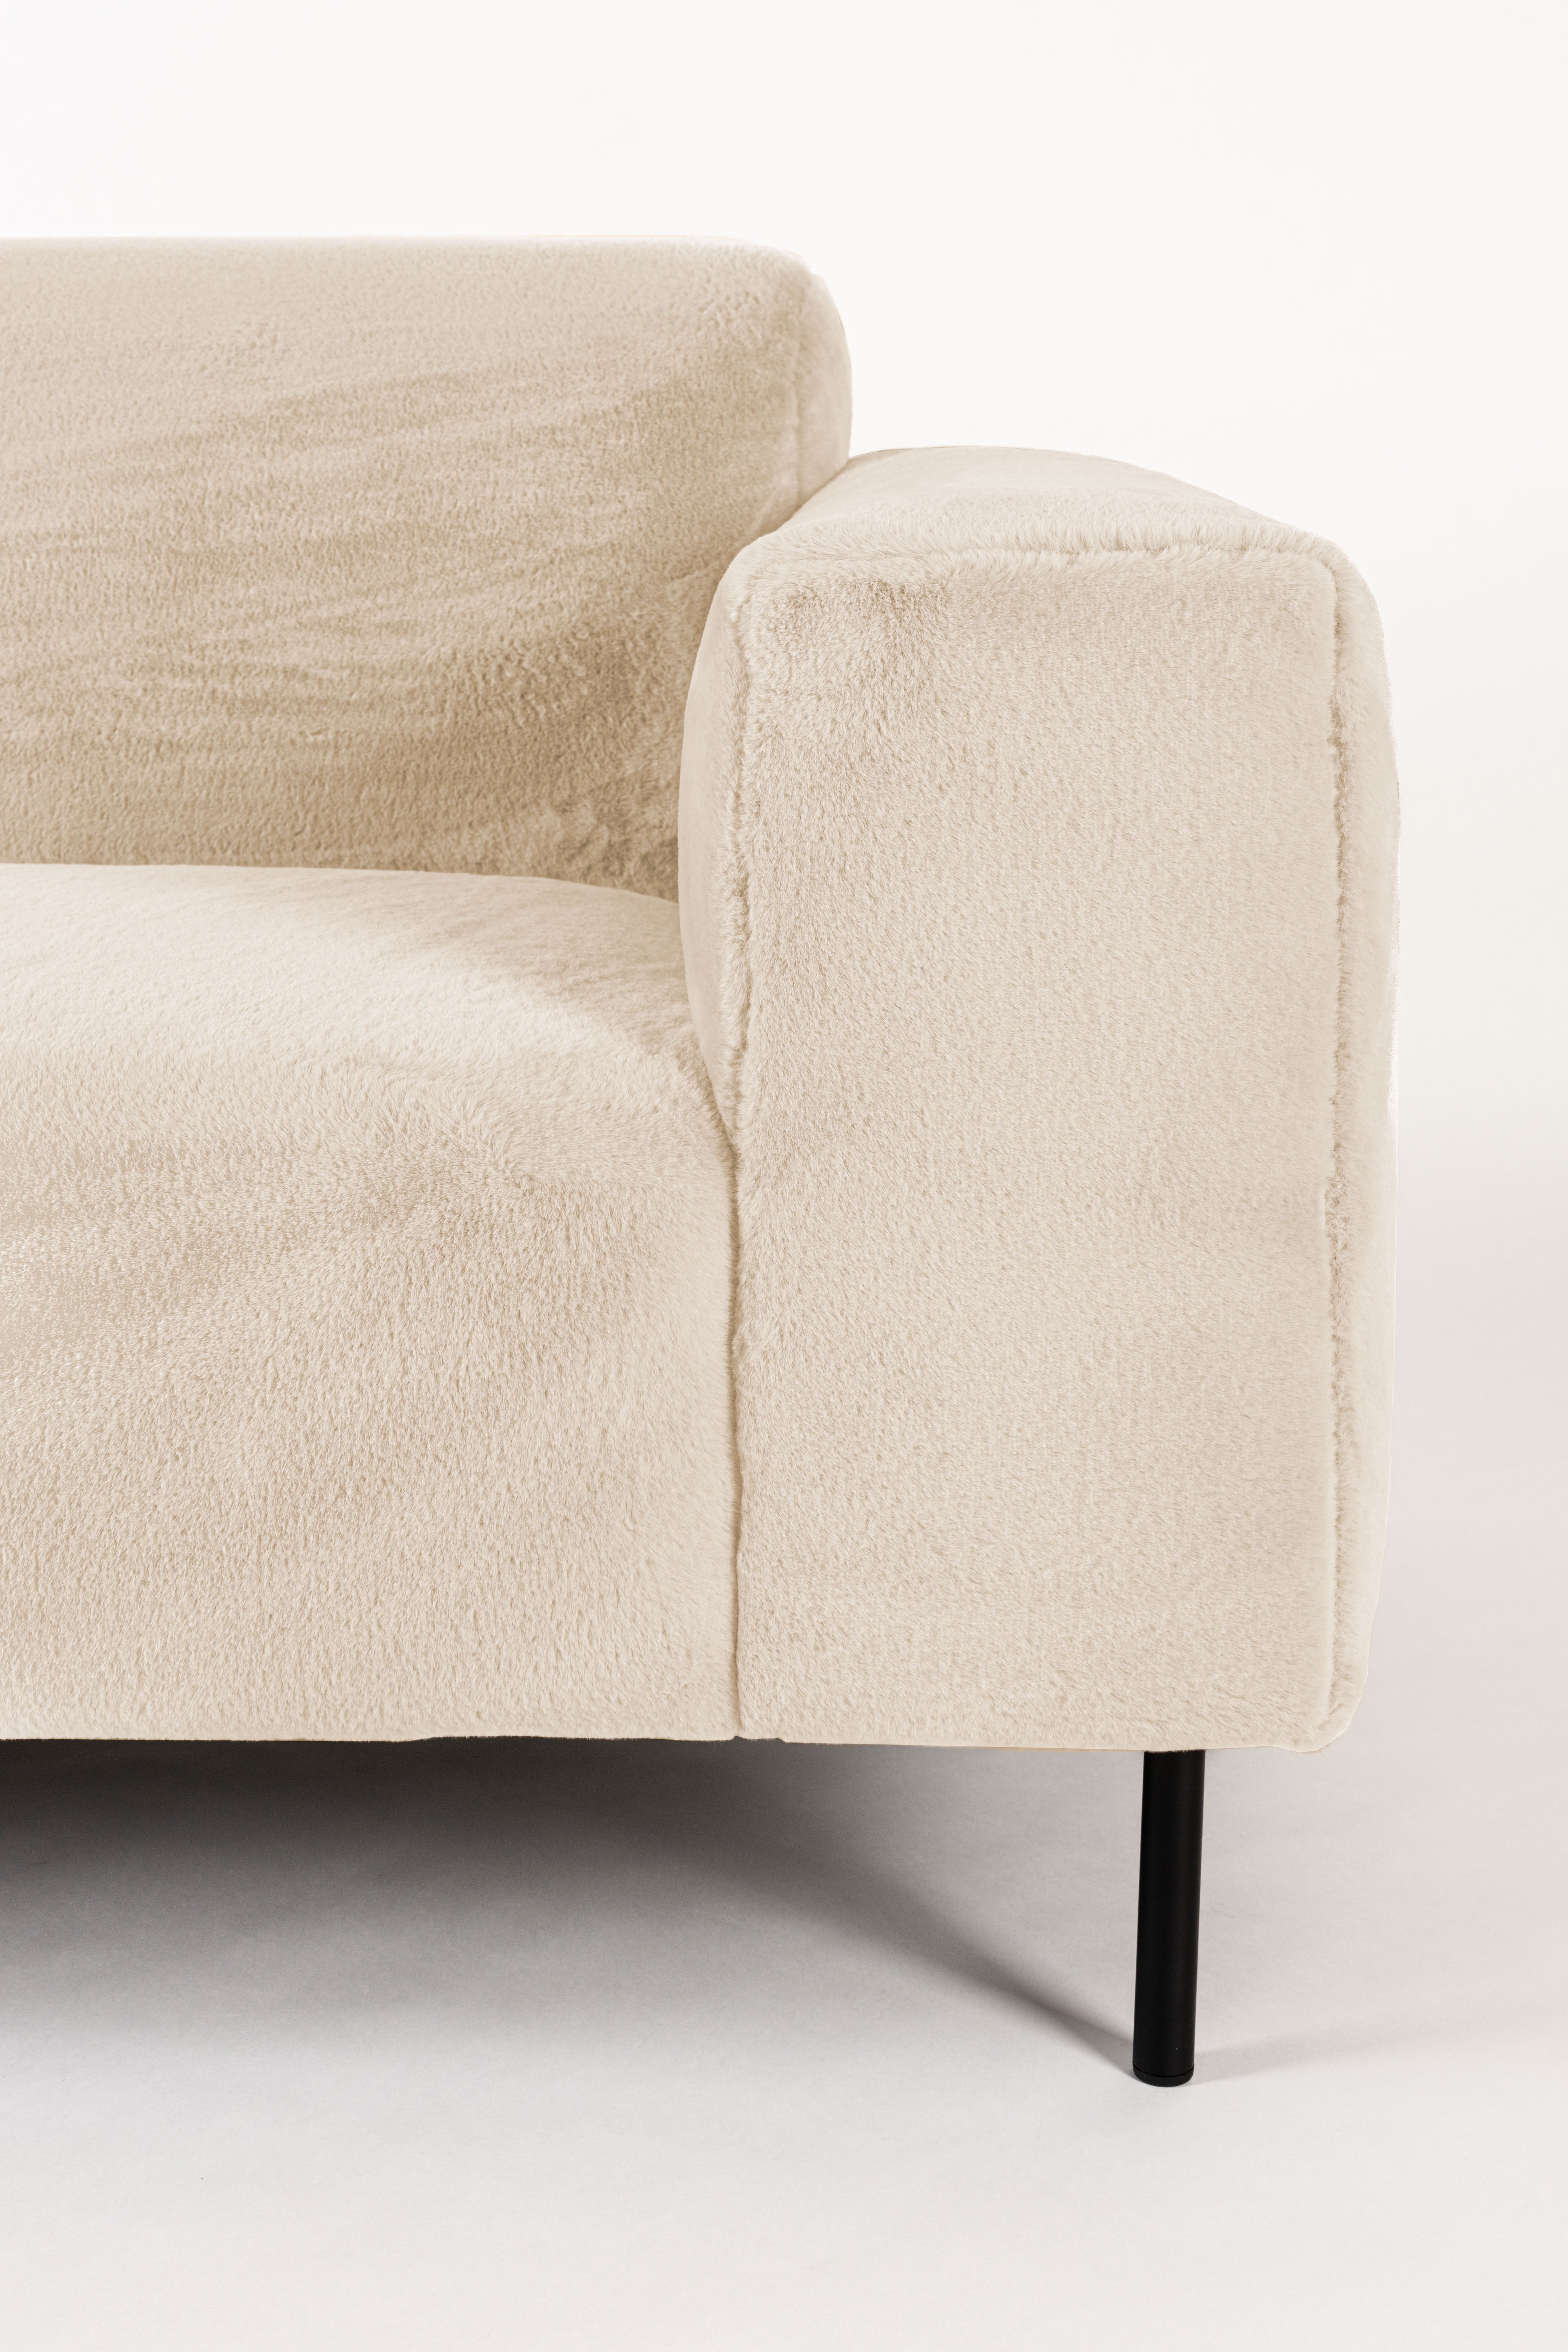 Sofa Sylvia 2.5 Sitzer in Beige präsentiert im Onlineshop von KAQTU Design AG. 2er Sofa ist von White Label Living